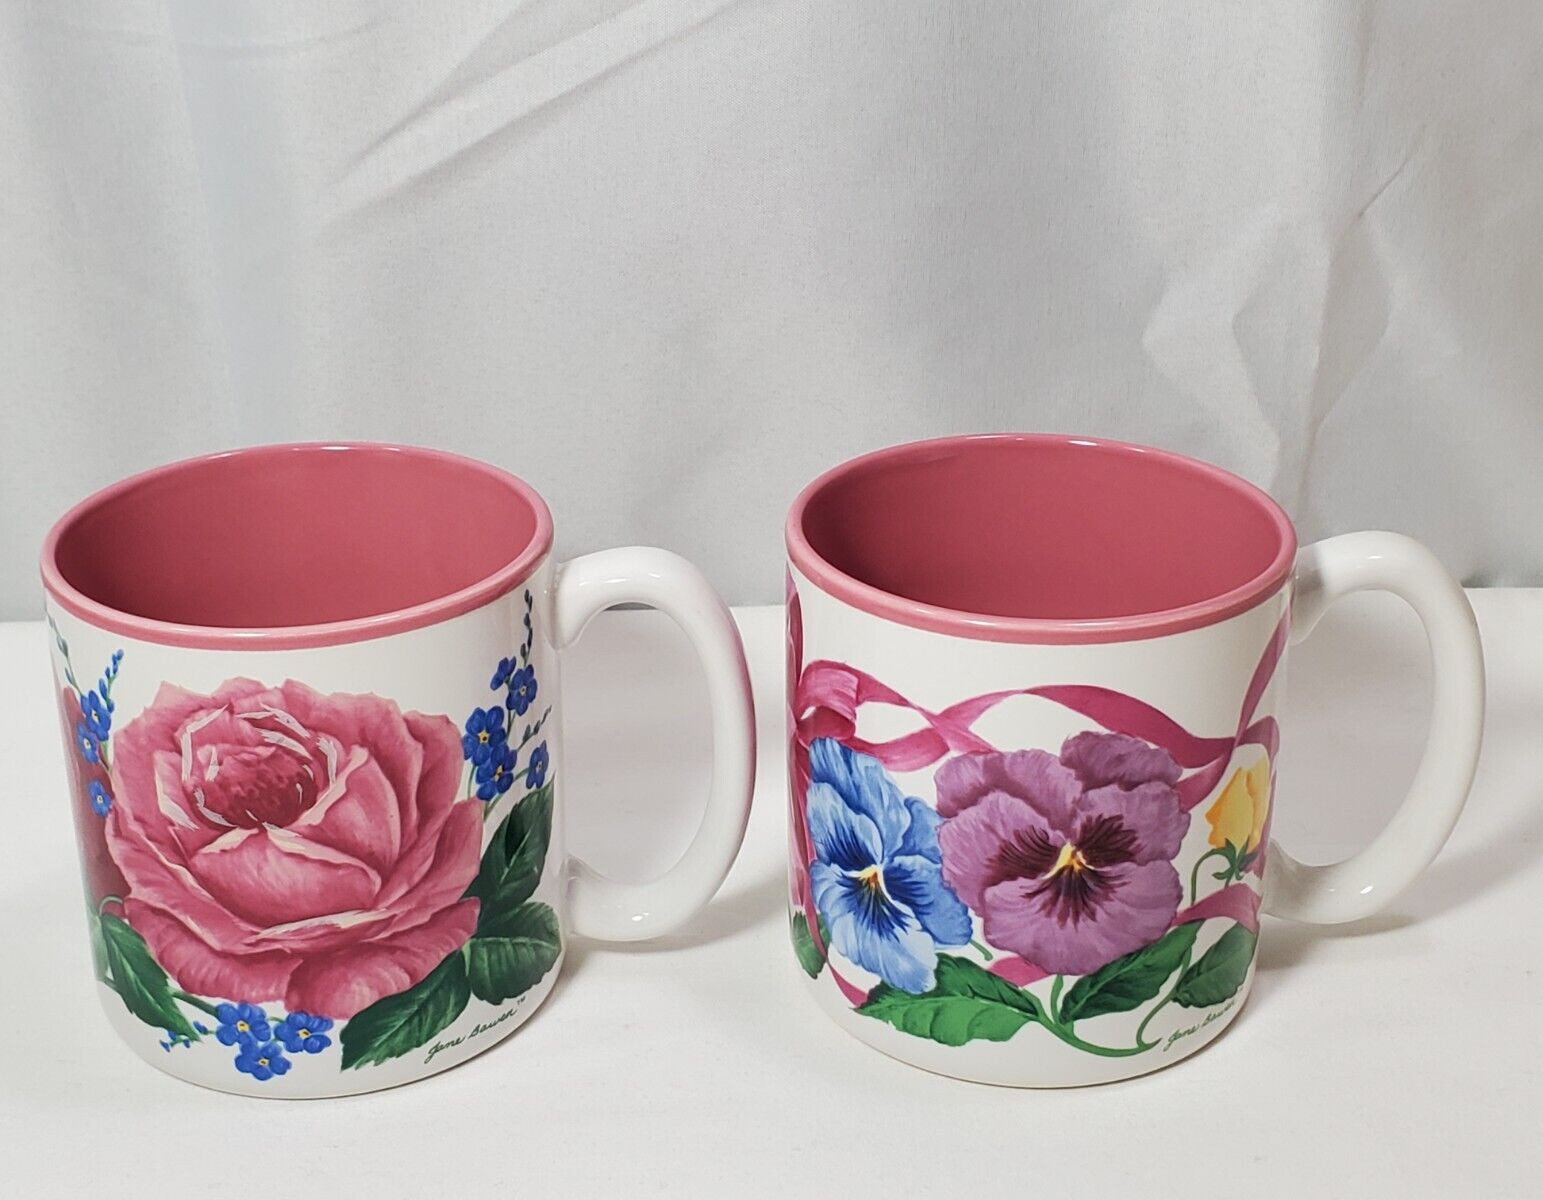 2 Vintage Jane Bowen Roses/Pansies Coffee Mug Cup Pink Flowers 10oz. Grandmacore